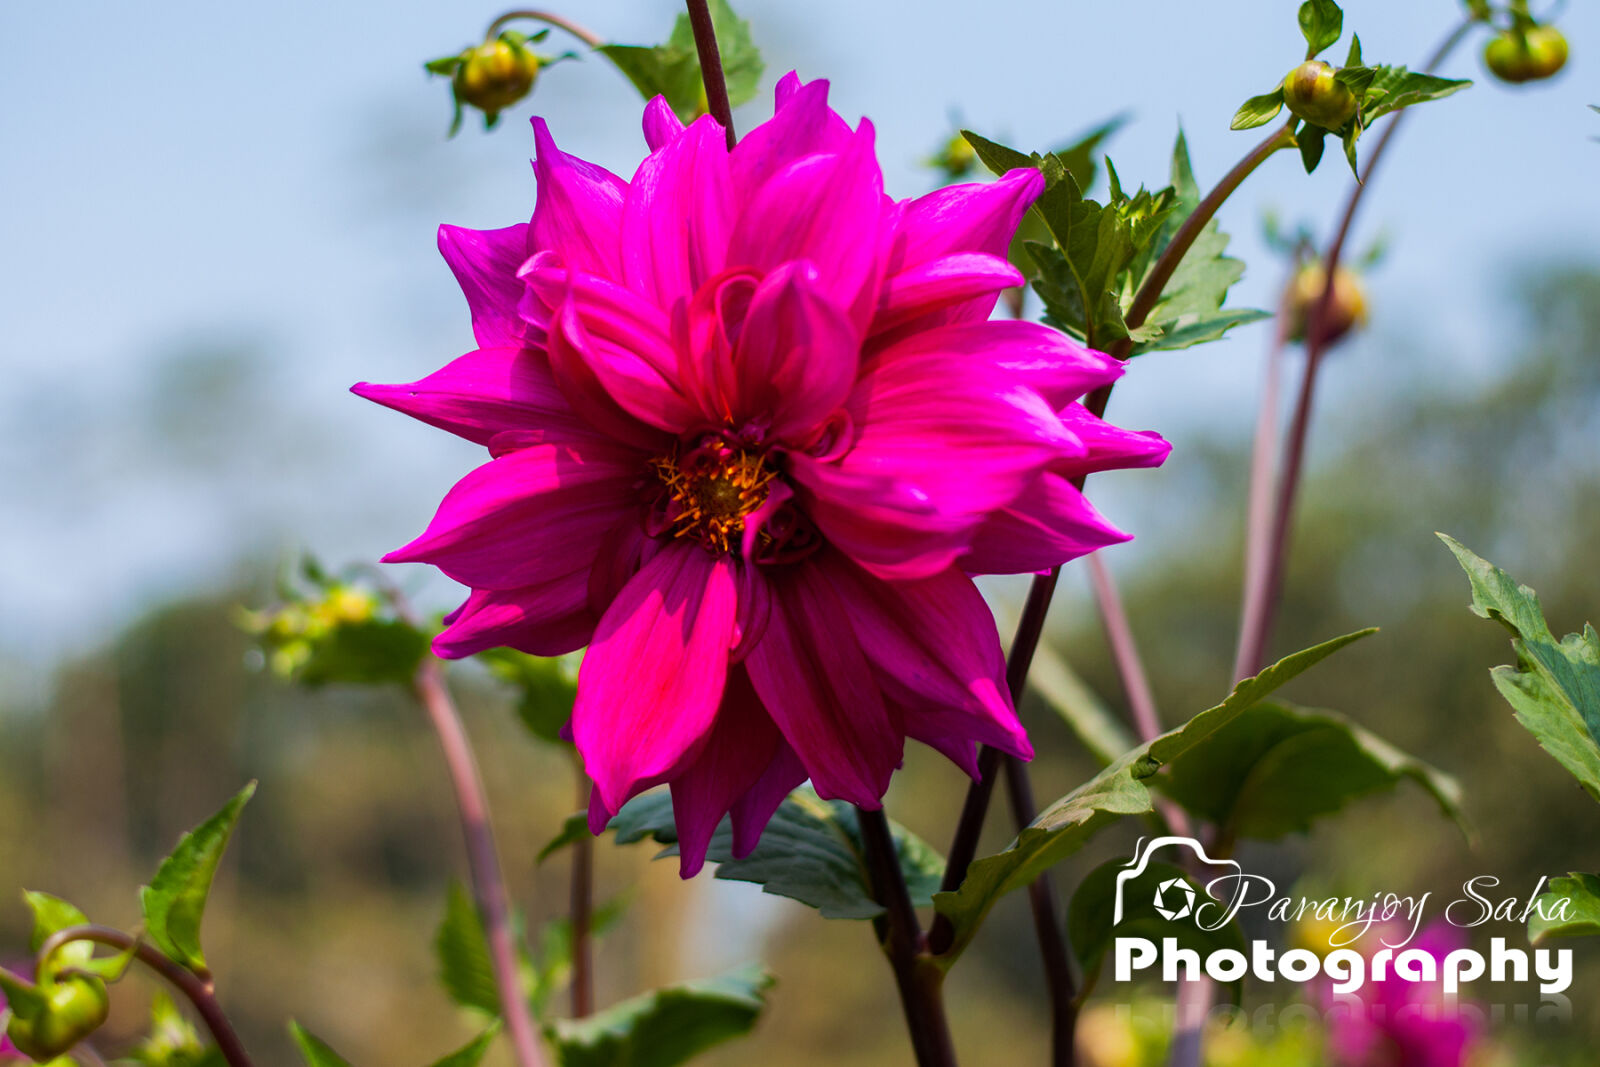 Nikon D90 + Nikon AF-S Nikkor 50mm F1.8G sample photo. Chelsea, flower, flower, spectacular photography